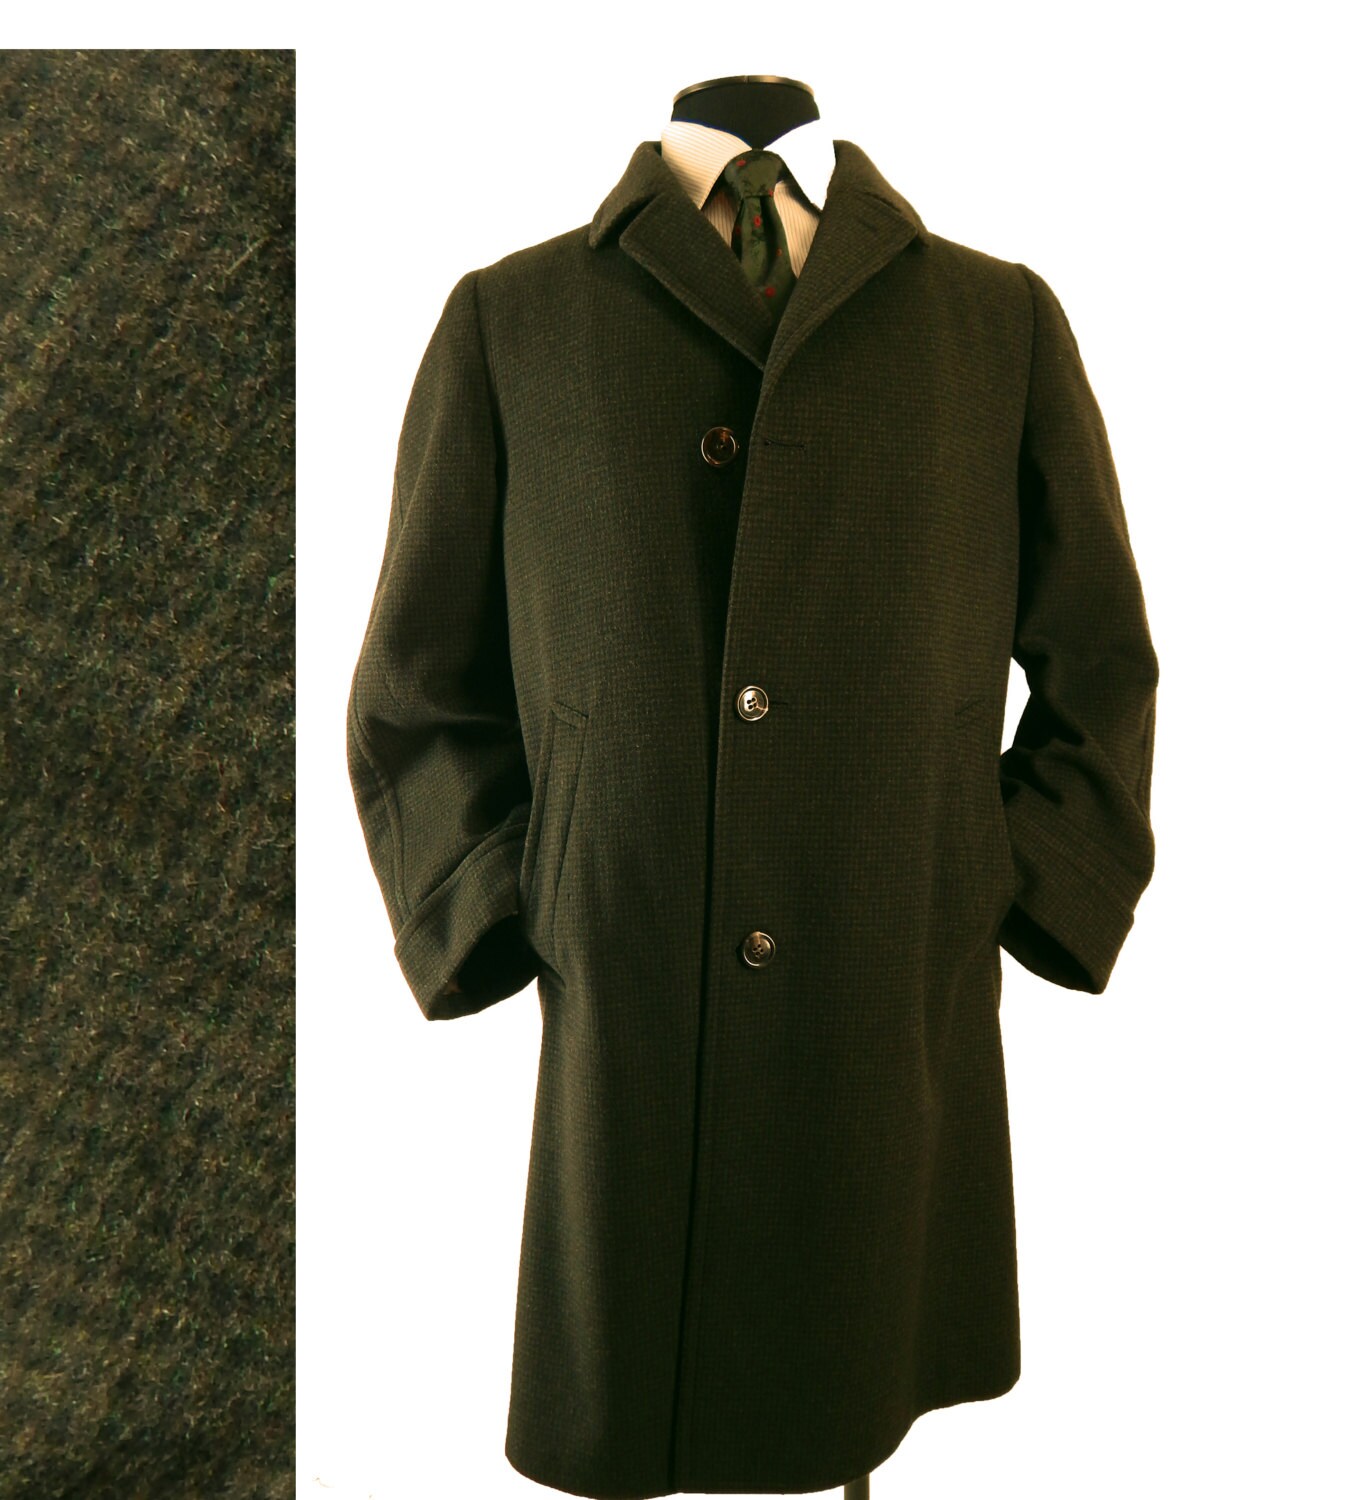 Mens Vintage 1960s Wool Coat Elegant Check Fabric Loomed in